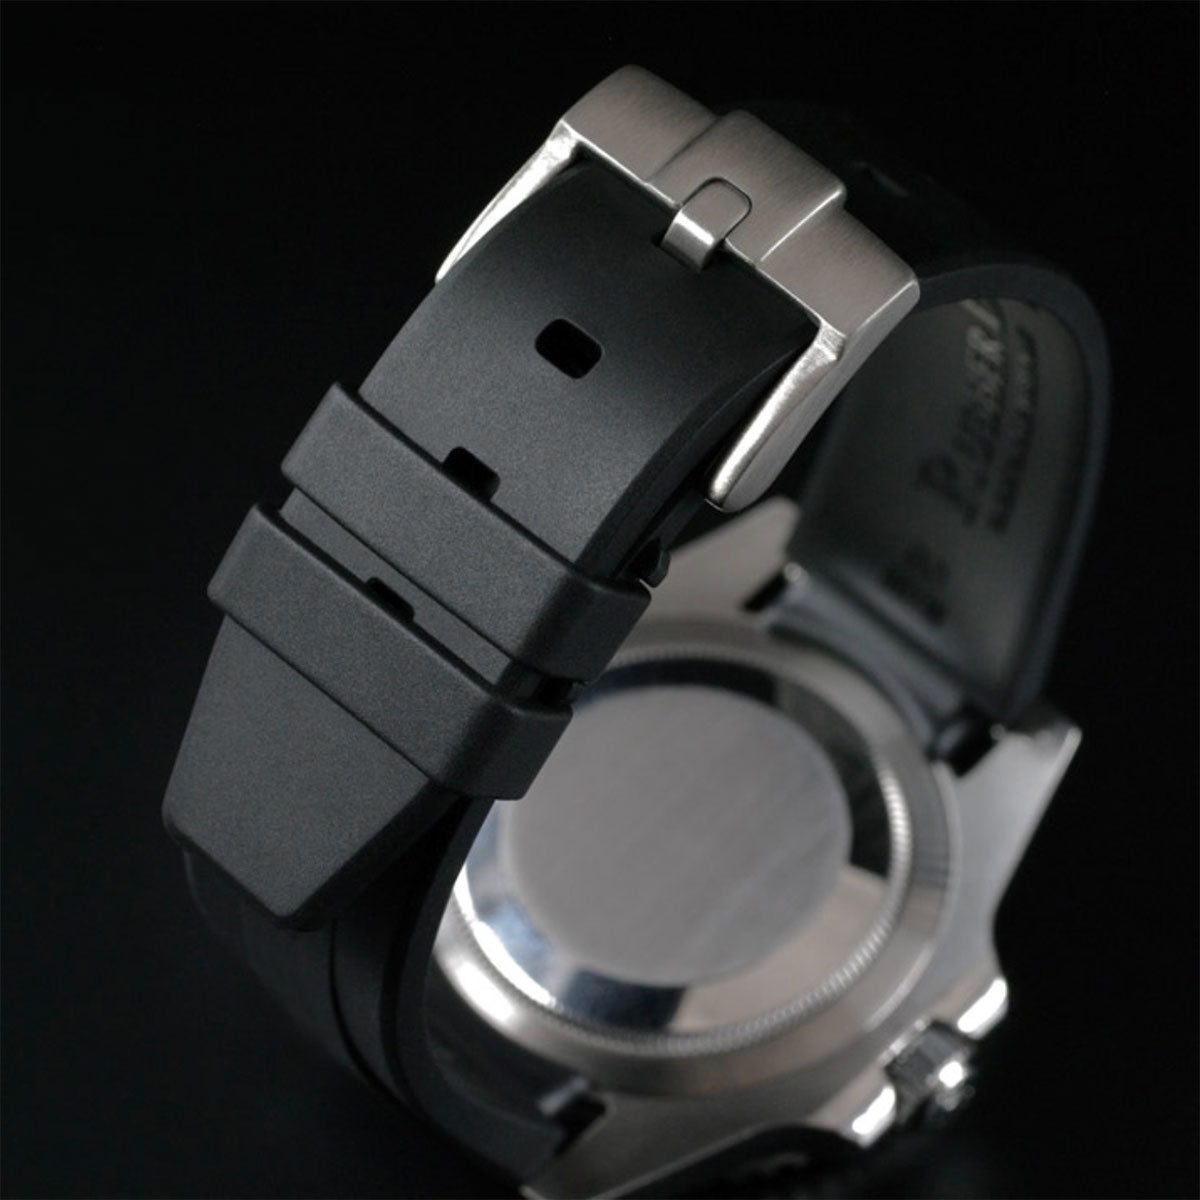 Rolex Jubilee / President Bracelet - Rubber B - Bracelet caoutchouc pour Oyster Perpetual / Datejust 31mm - Série boucle ardillon - watch band leather strap - ABP Concept -